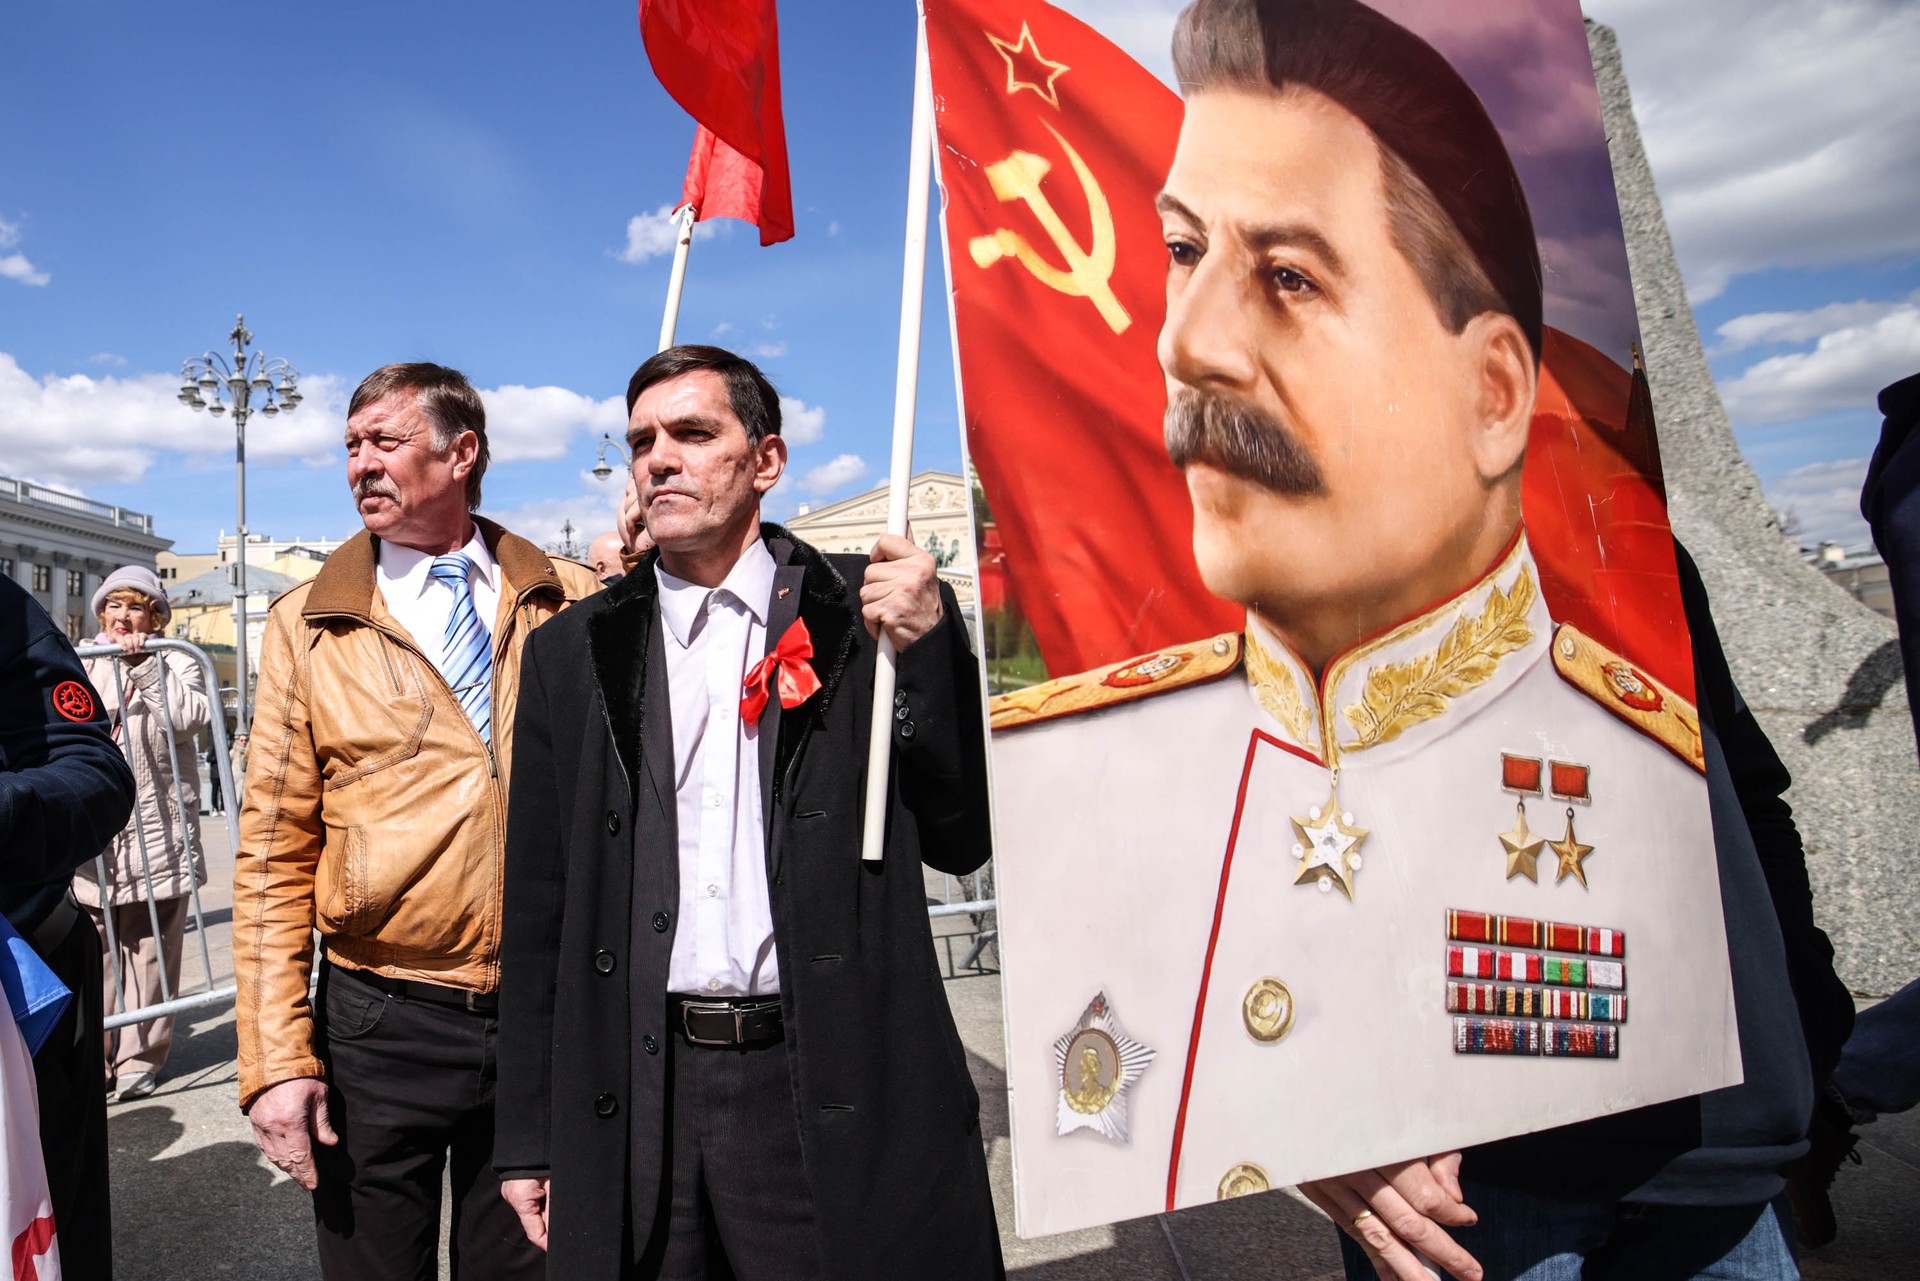 Нержавеющий Сталин: почему мы не перестаём спорить о вожде